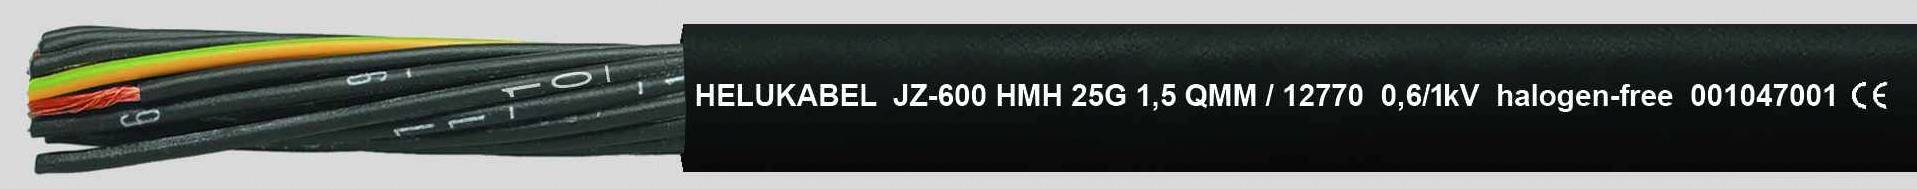 HELUKABEL JZ-600 HMH Steuerleitung 4 G 1 mm² Schwarz 12750-1000 1000 m